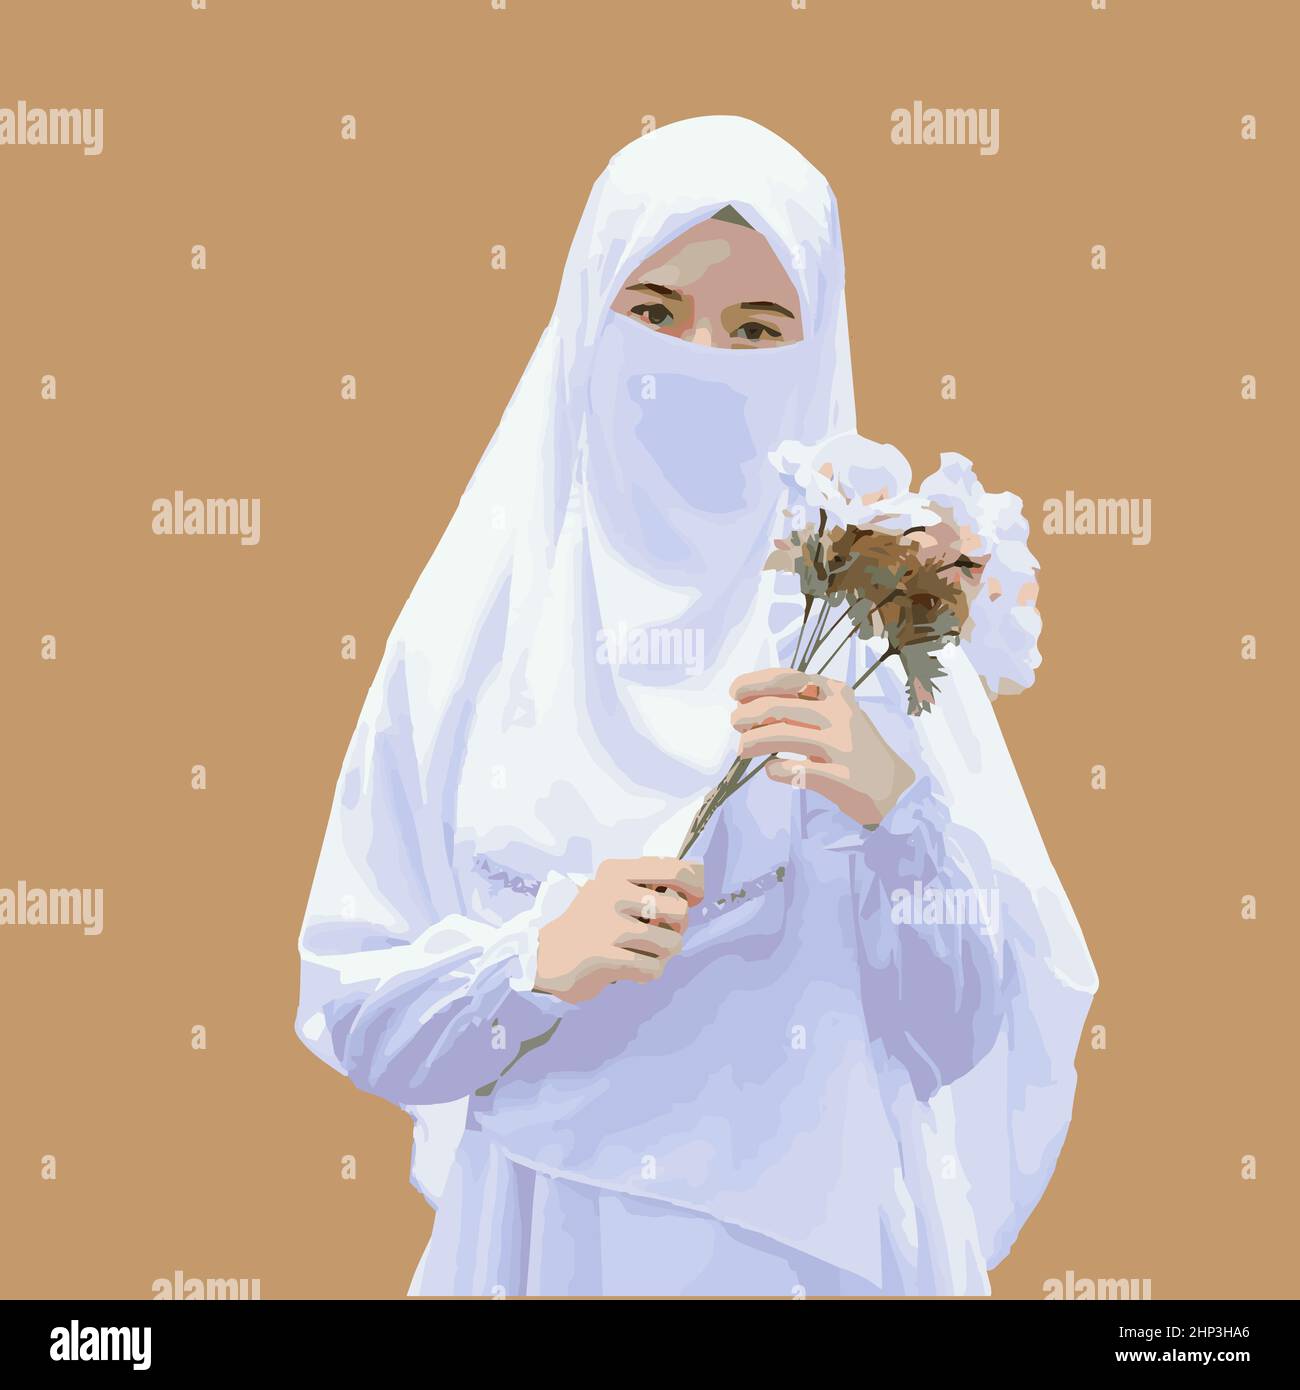 Hijabi queen girl vector art graphics Stock Vector